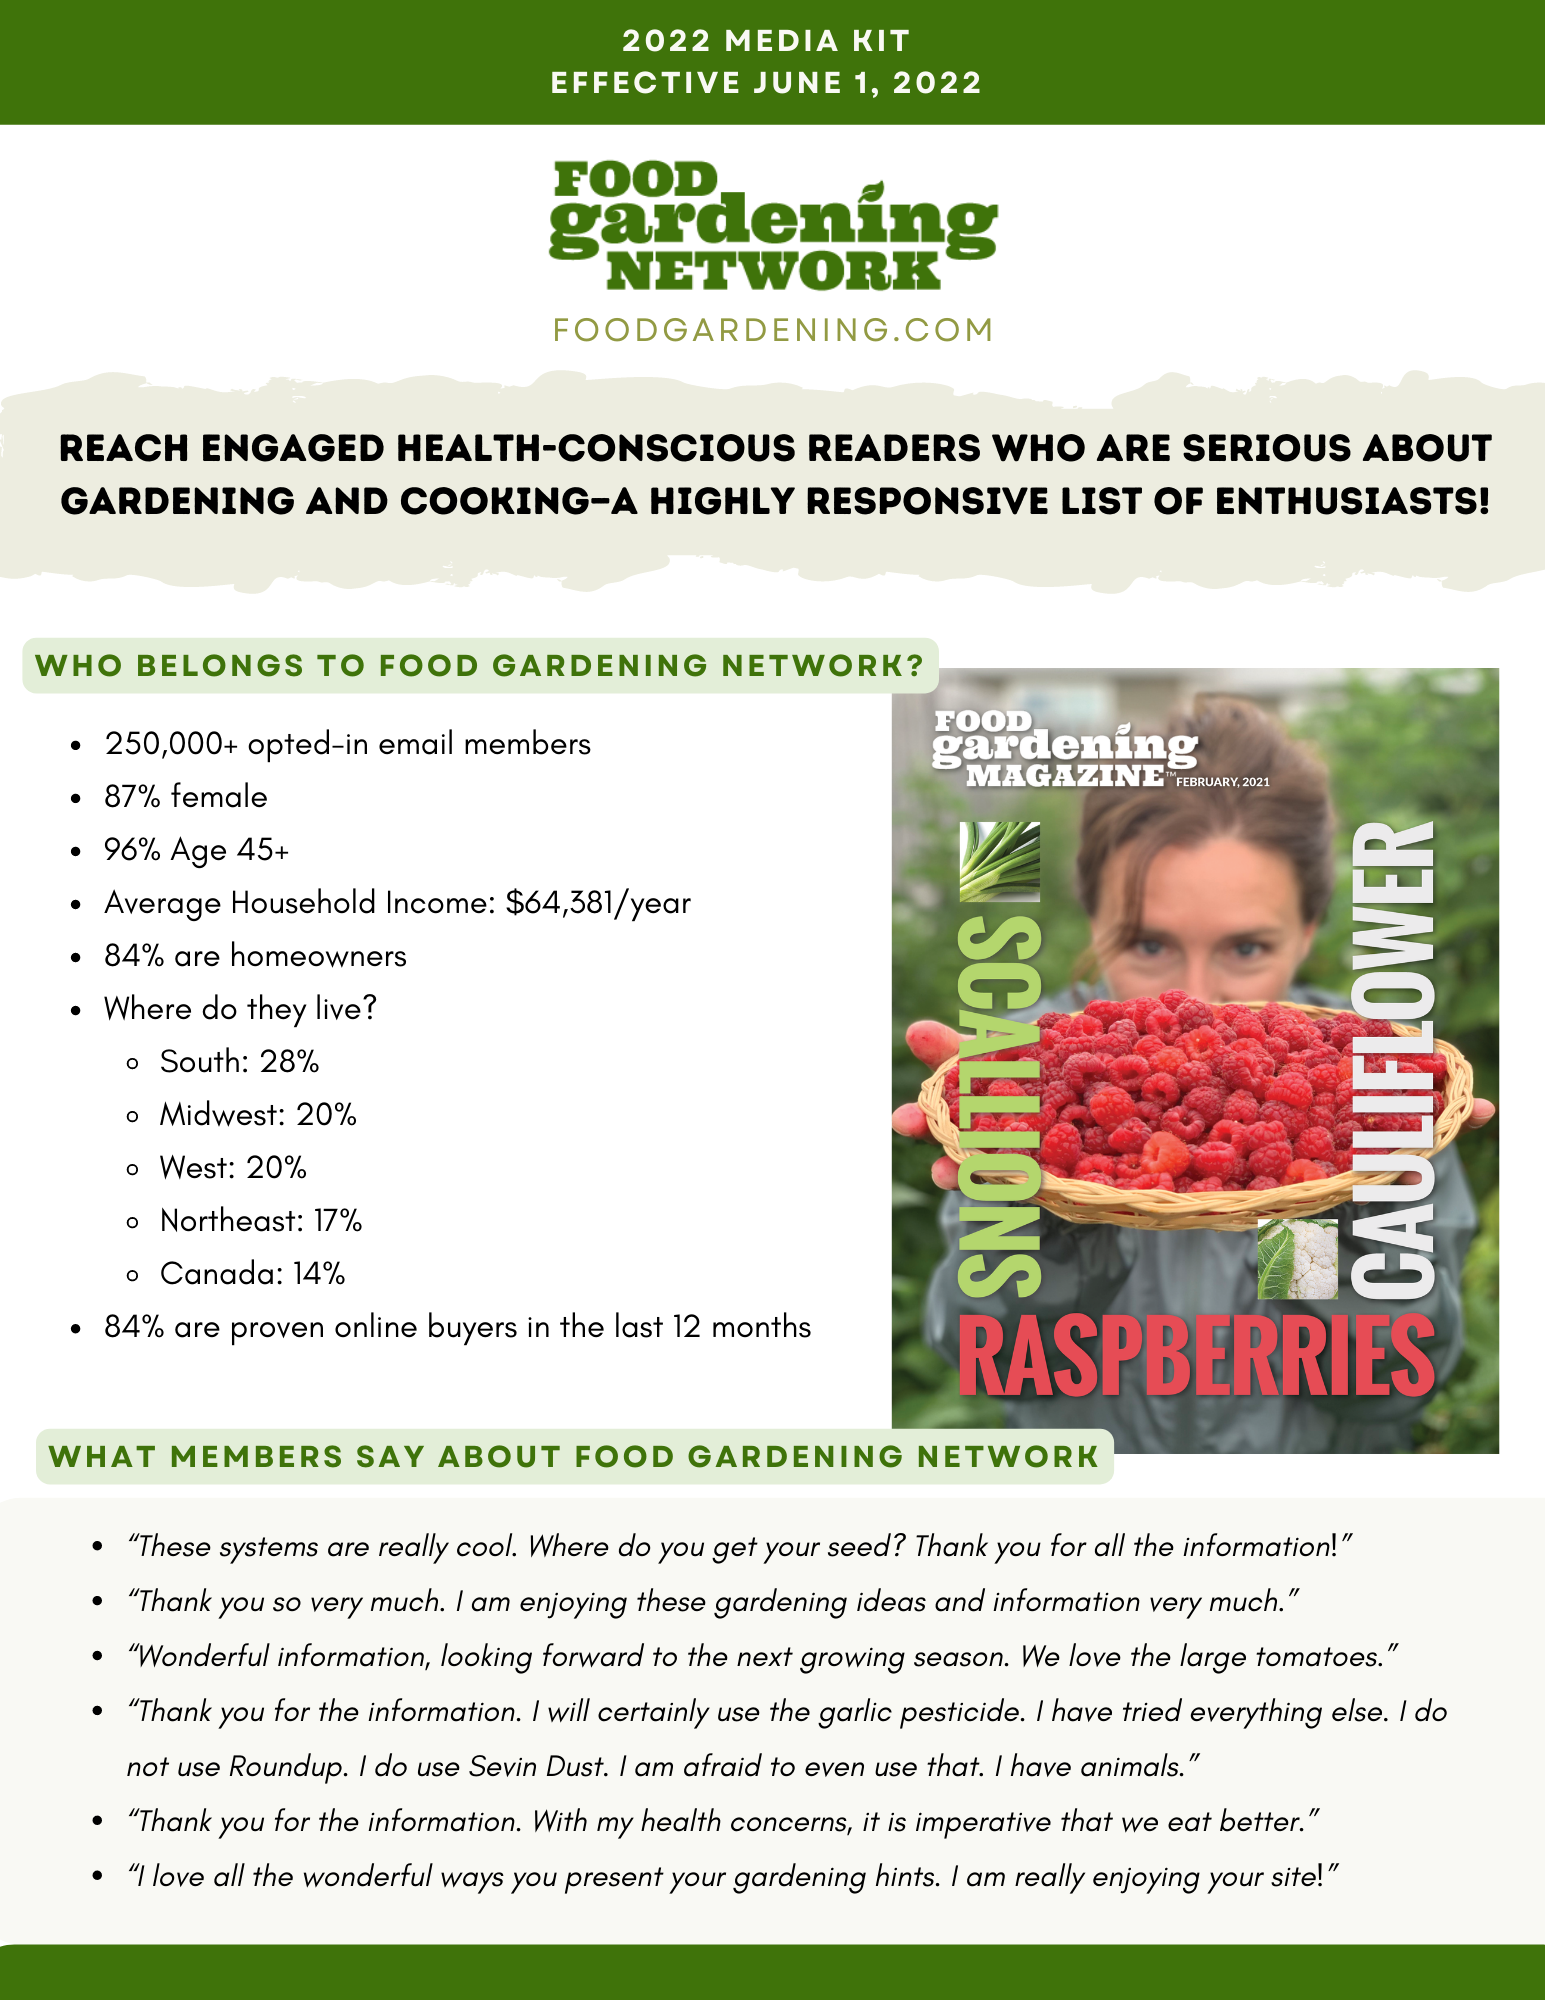 Food Gardening Network’s “Sponsor Our Community” Program: Media Kit